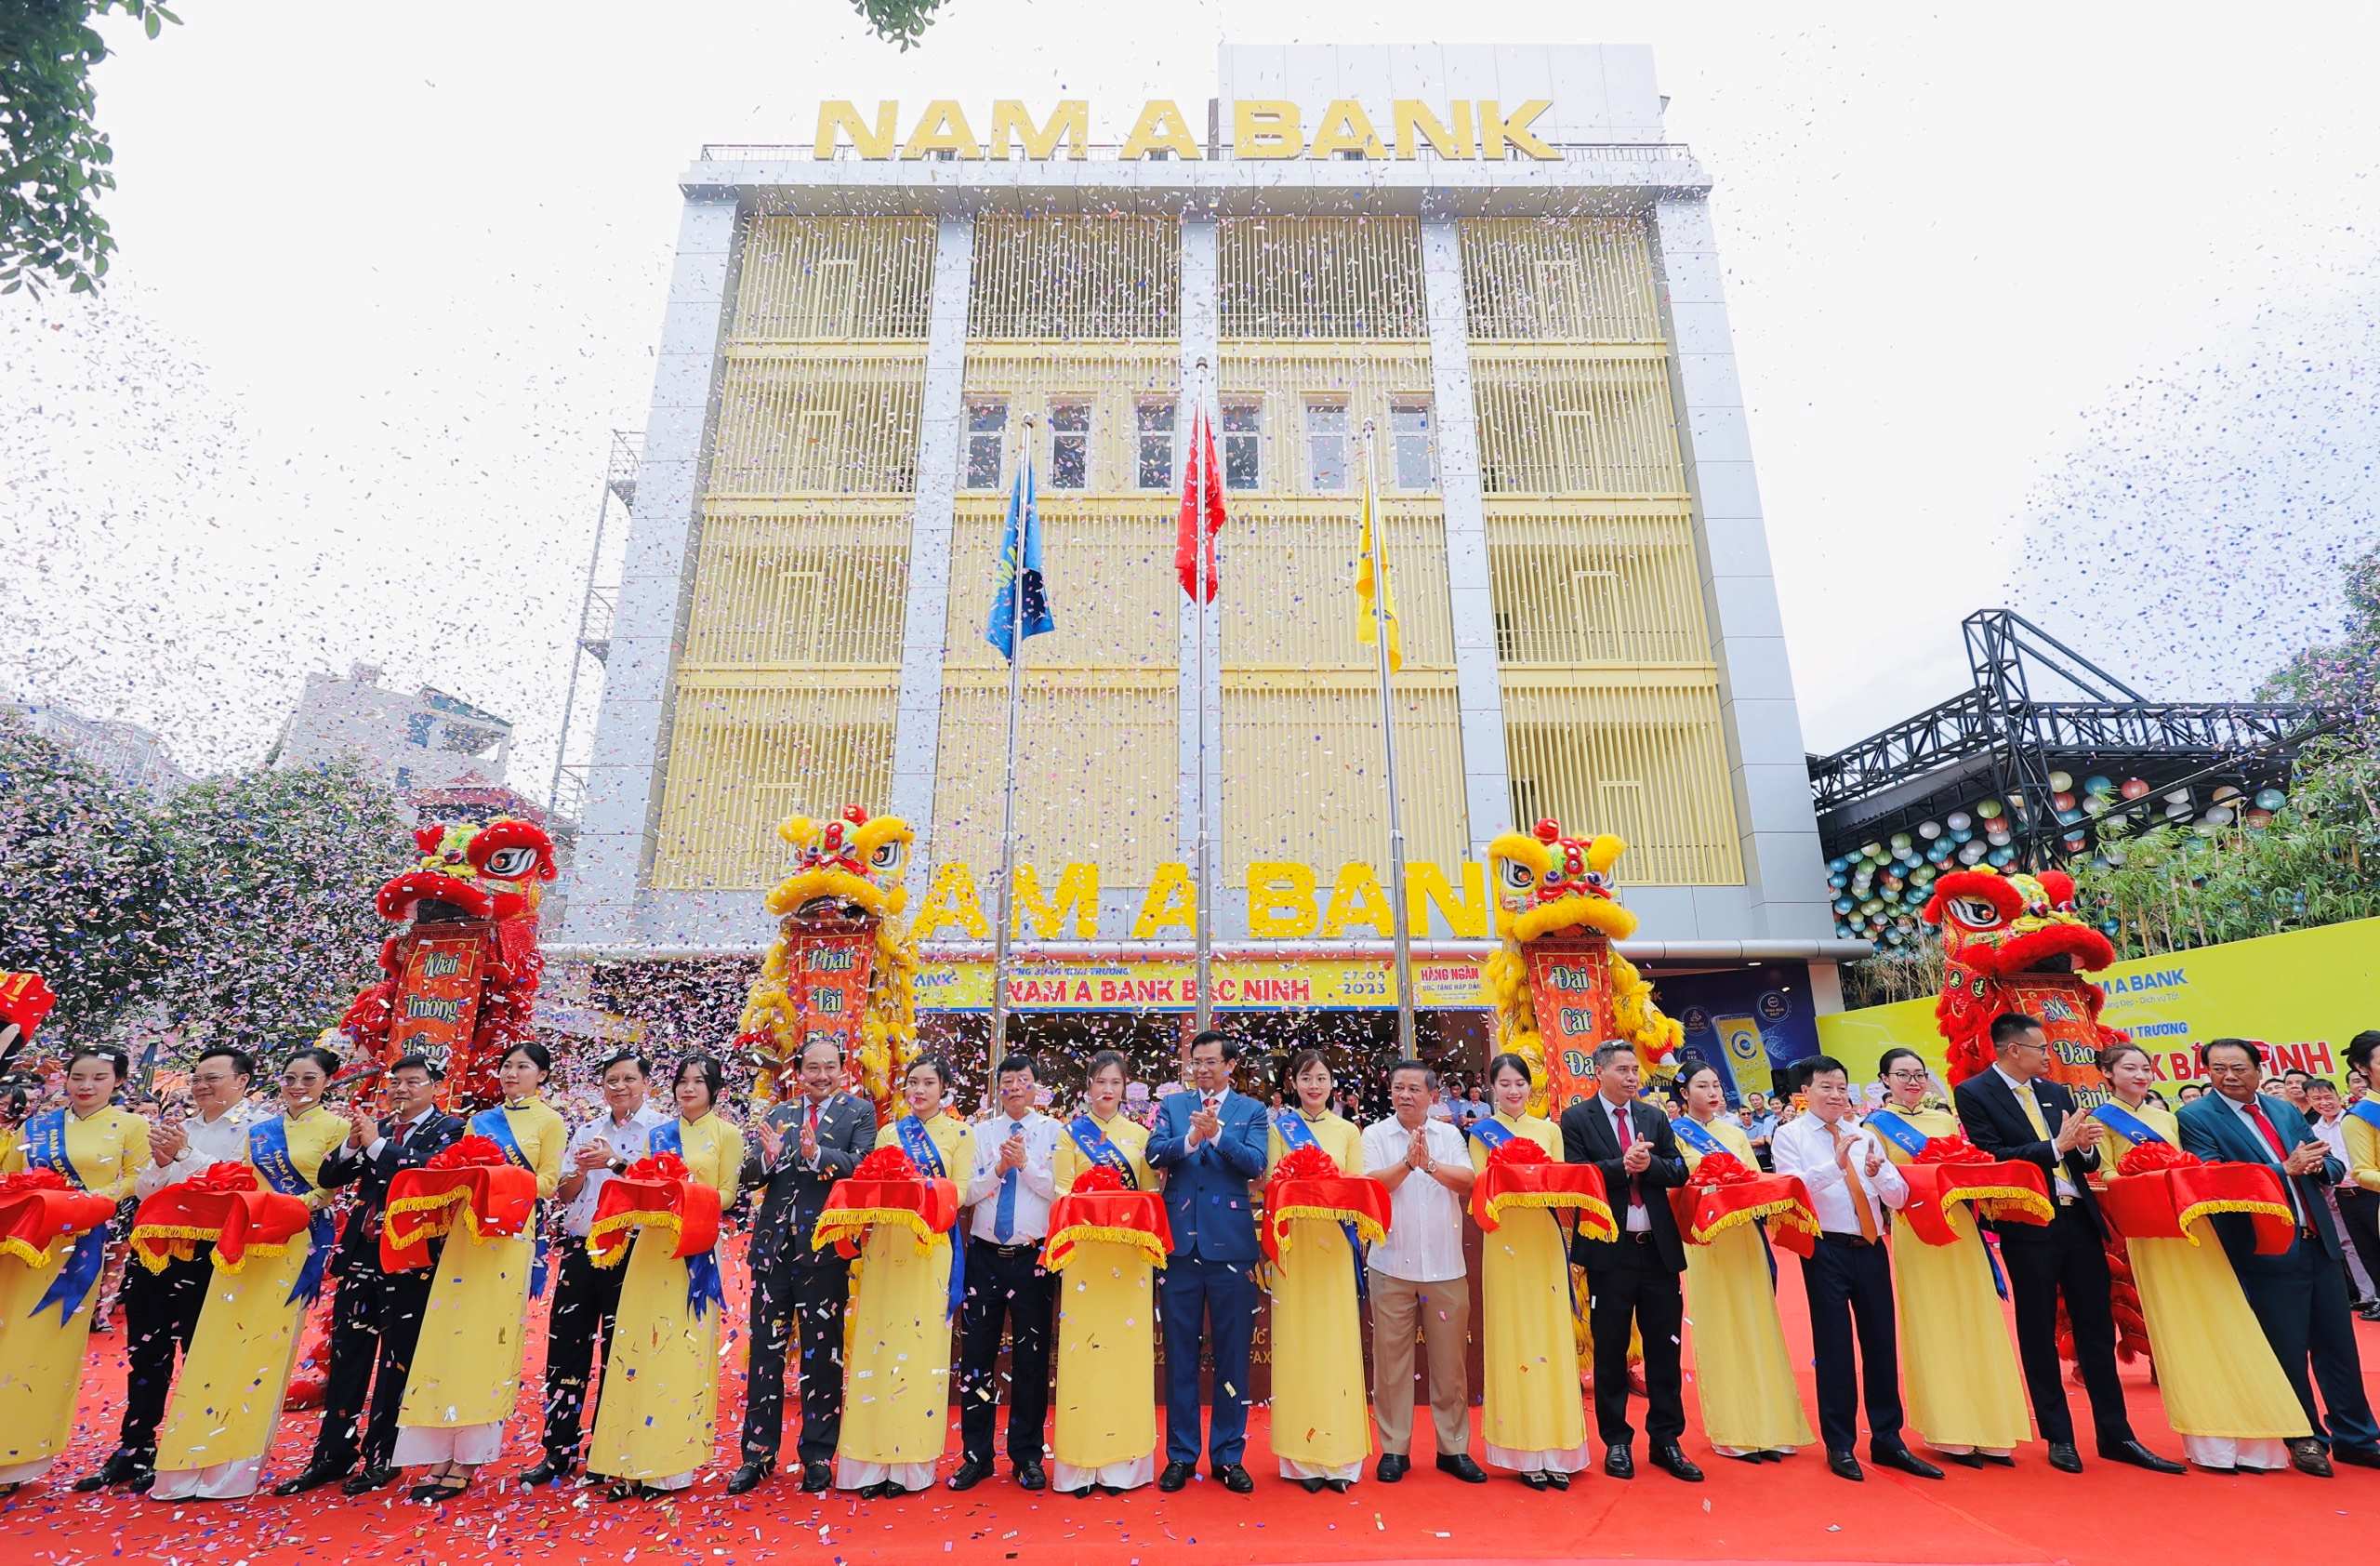 Cần biết - NAM A BANK hoàn thành chiến lược mở rộng mạng lưới năm 2023, nâng tổng số đơn vị kinh doanh lên gần 250 điểm